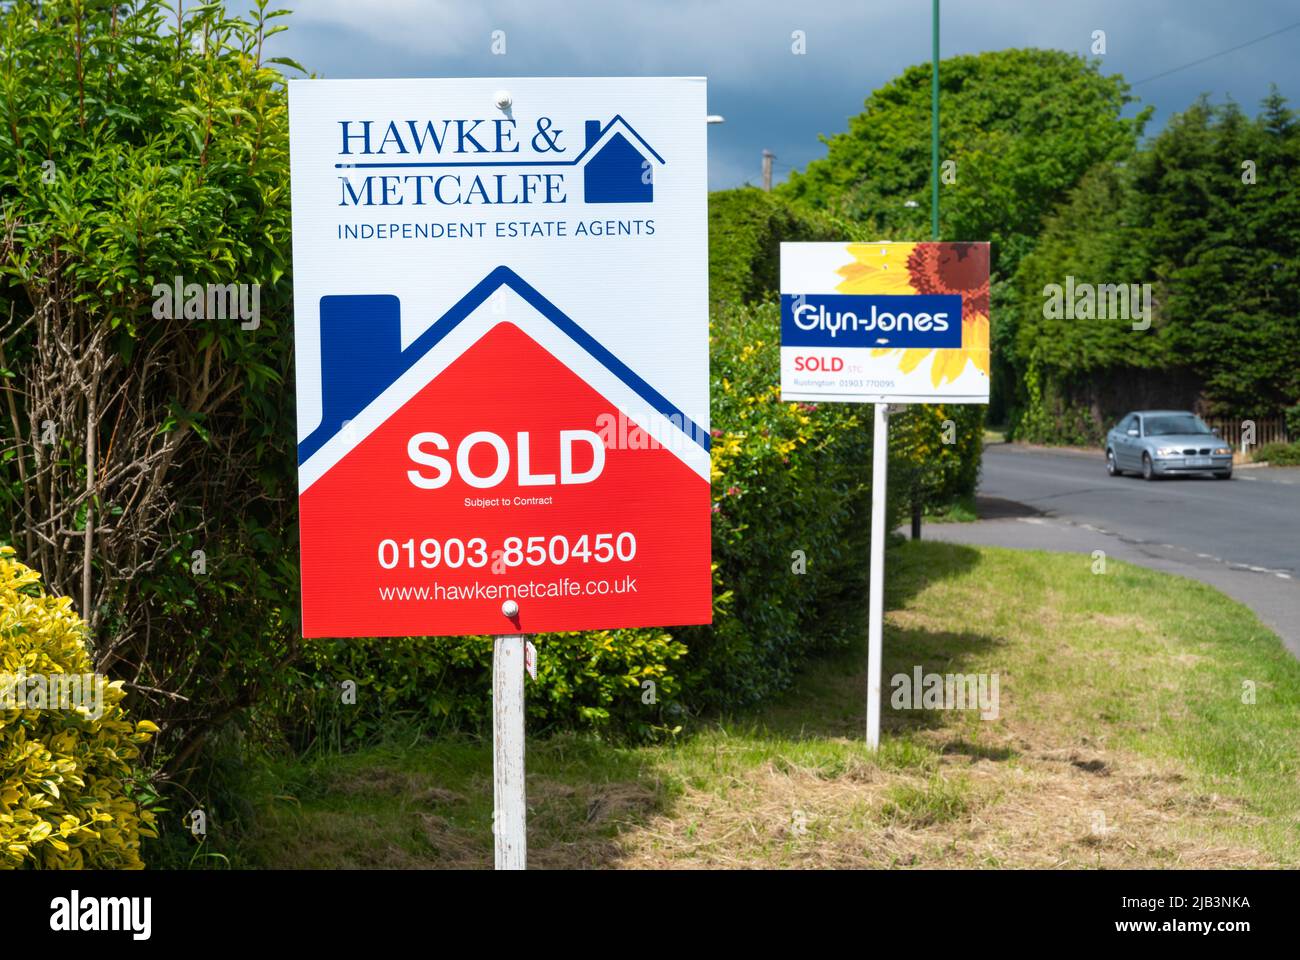 Segno dell'agente immobiliare (Hawke & Metcalfe) e un altro per gli agenti immobiliari Glyn Jones che mostrano le case o le proprietà vendute. Casa venduta insegne in Inghilterra, Regno Unito. Foto Stock